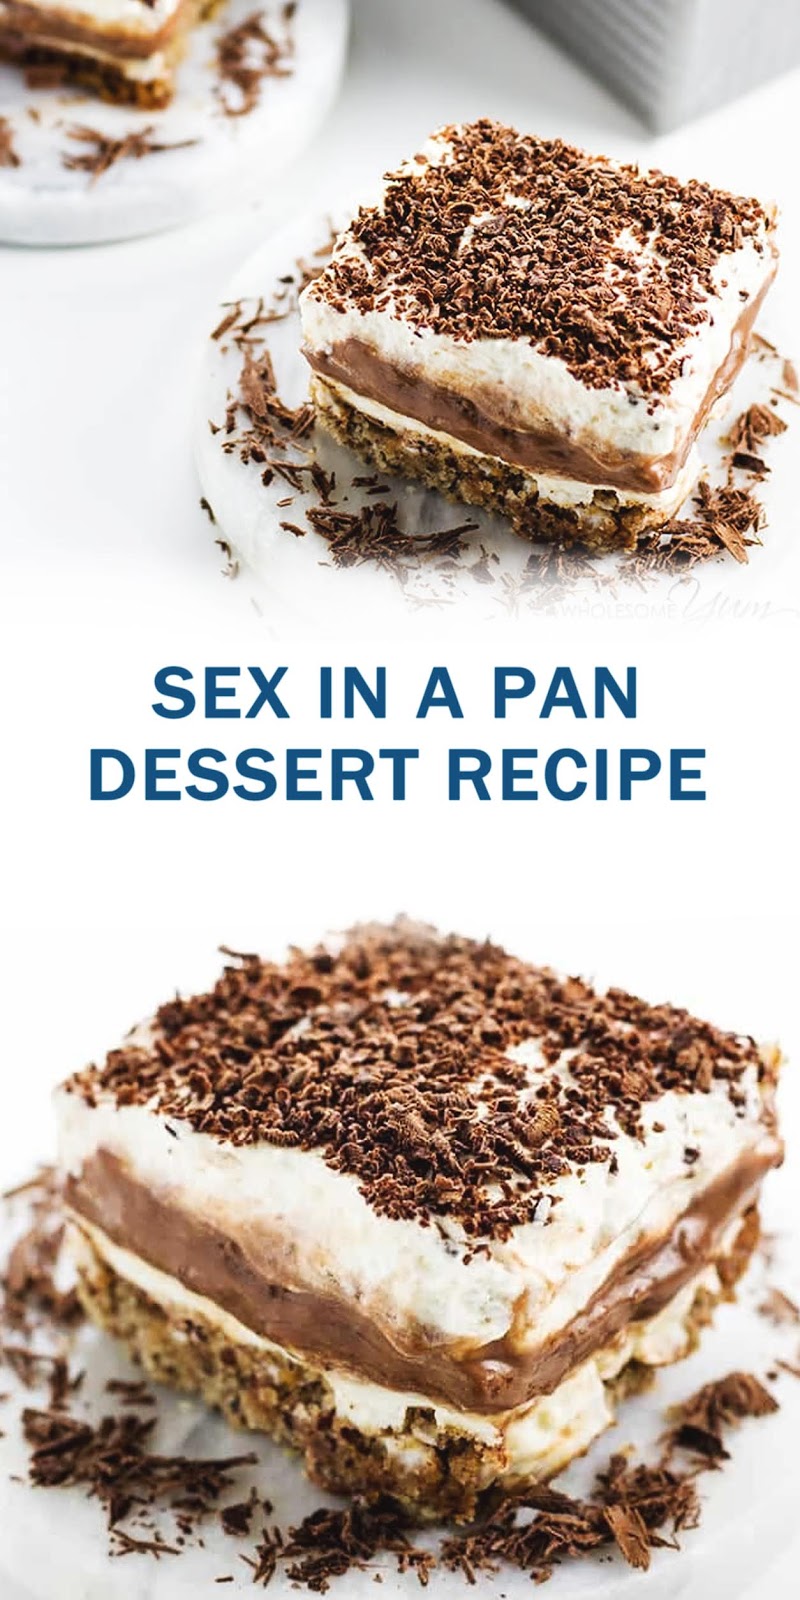 SEX IN A PAN DESSERT RECIPE